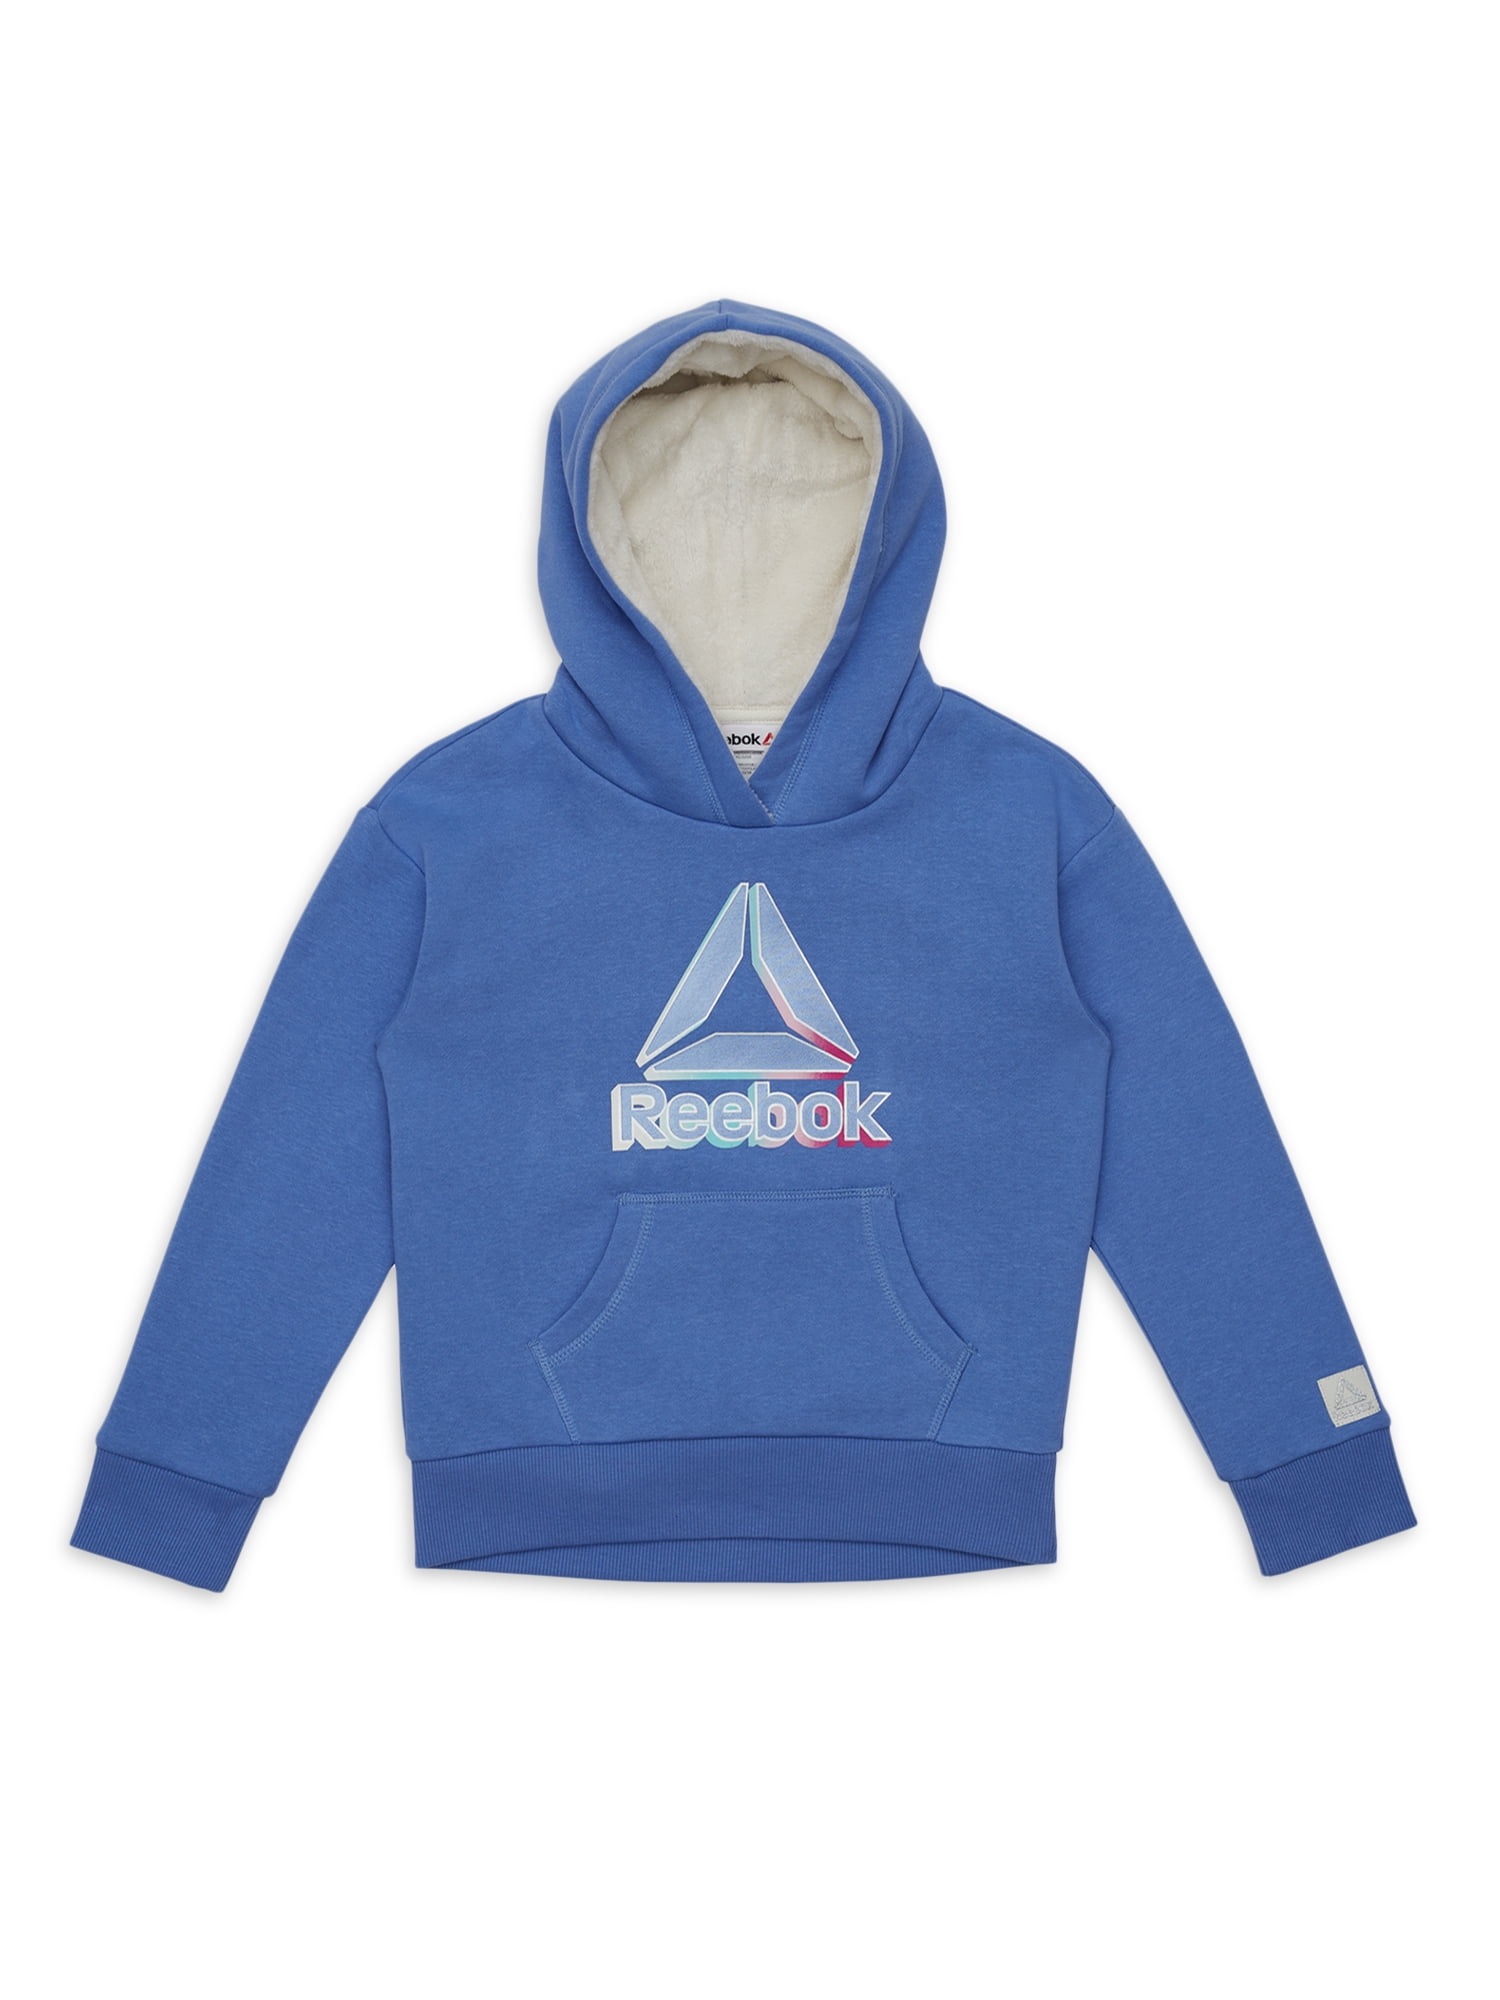 Reebok Girls’ Fashion Hoodie Sweatshirt Fleece Pullover or Zip Hoodie Sweatshirt 7-16